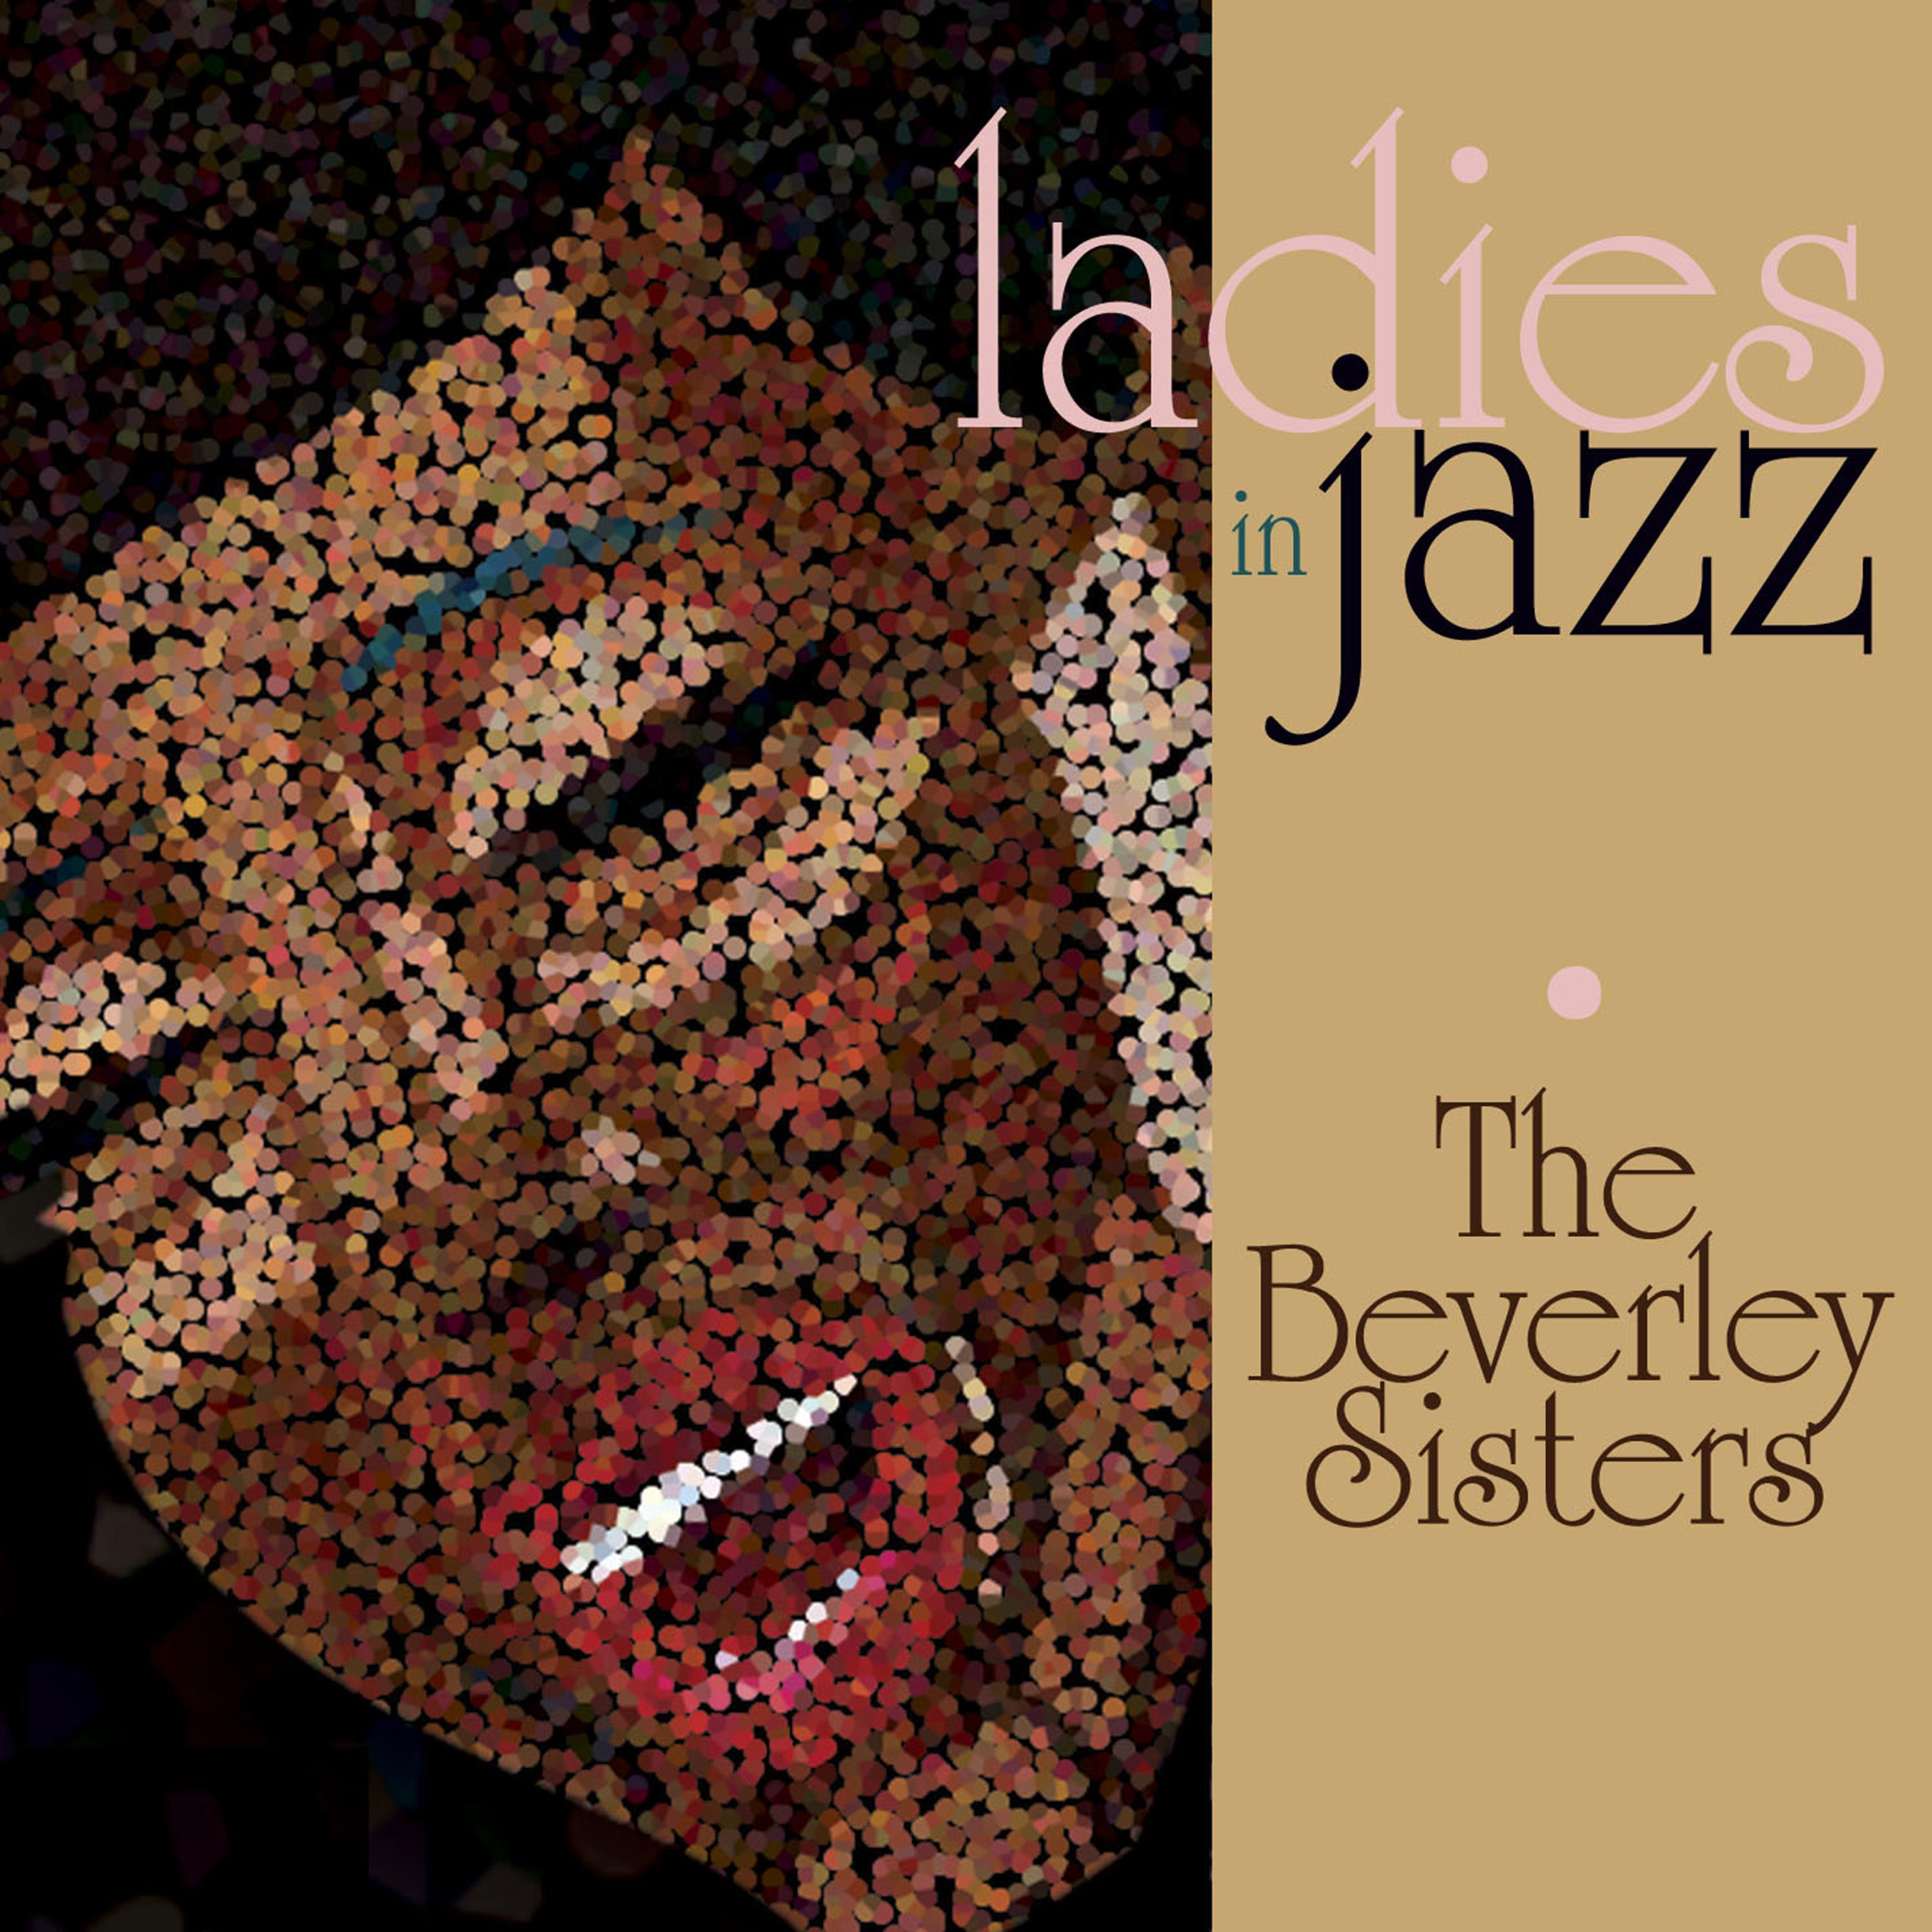 Ladies in Jazz - The Beverley Sisters